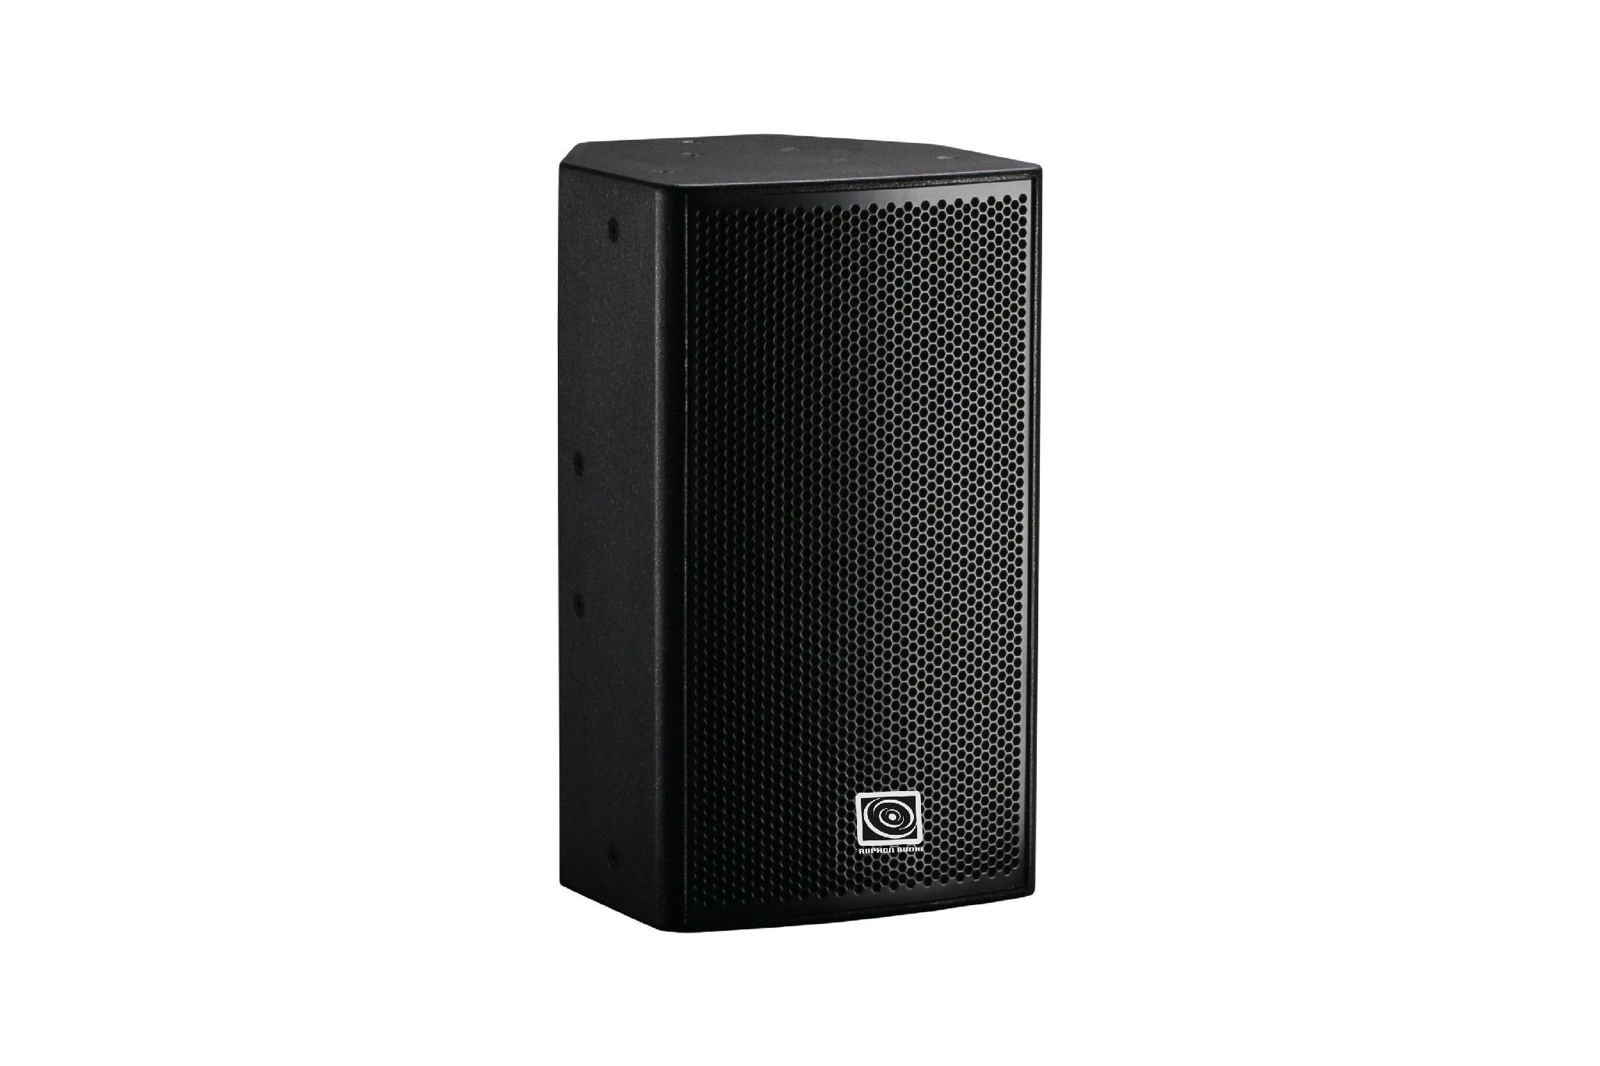 Professional speakers HP series